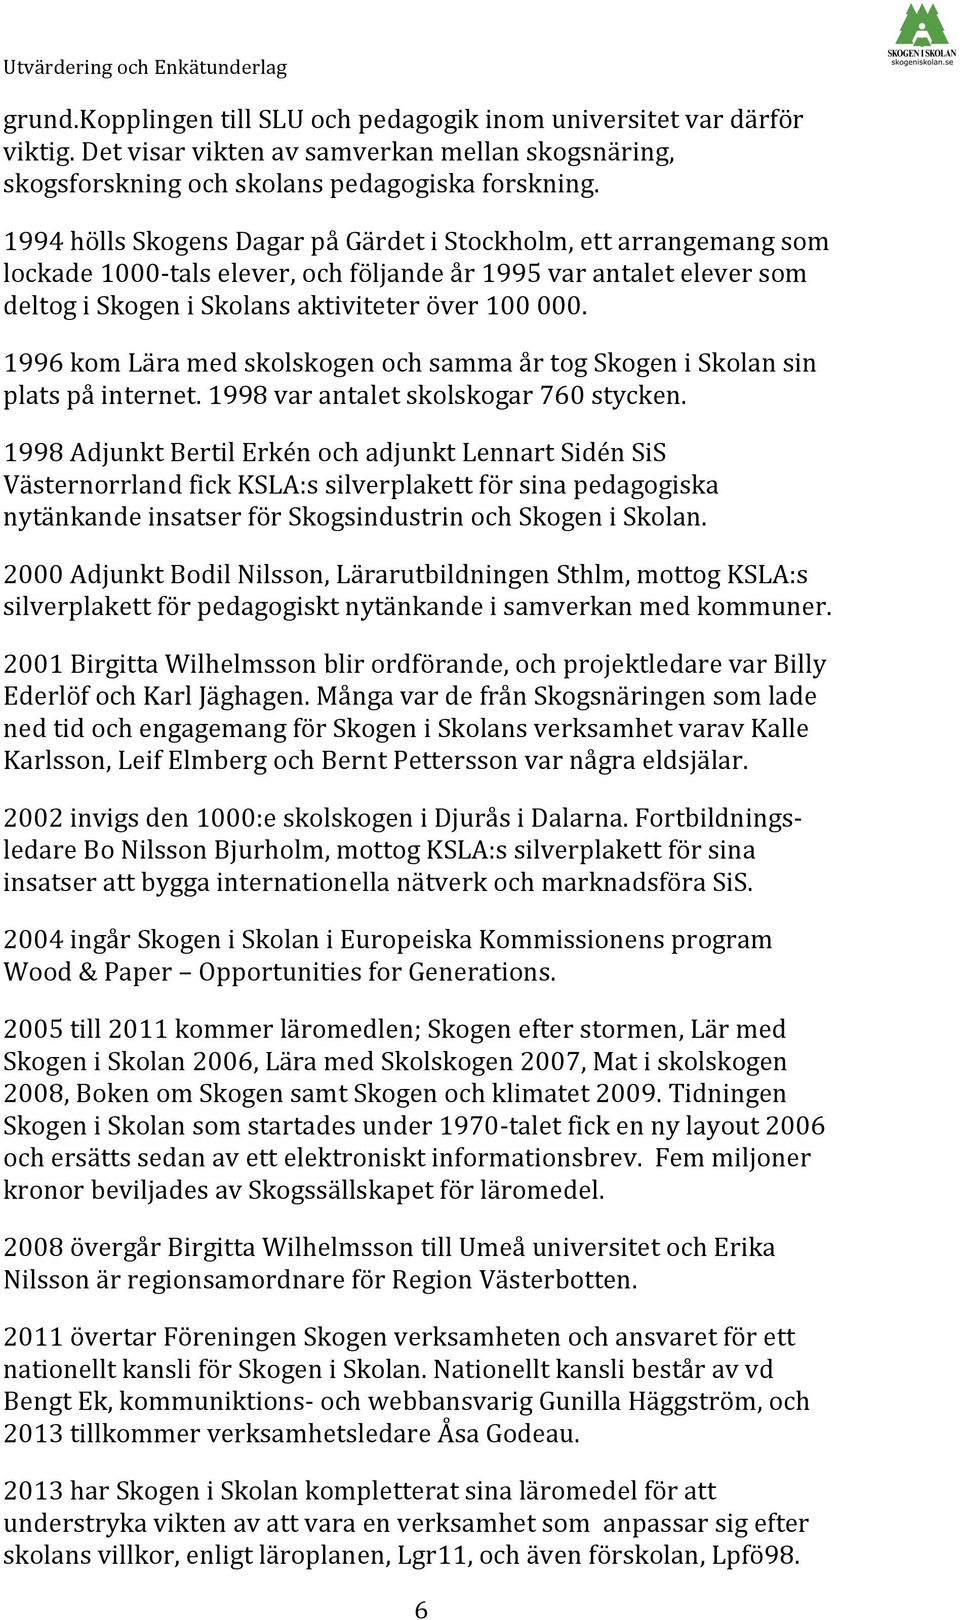 1994 hölls Skogens Dagar på Gärdet i Stockholm, ett arrangemang som lockade 1000- tals elever, och följande år 1995 var antalet elever som deltog i Skogen i Skolans aktiviteter över 100 000.